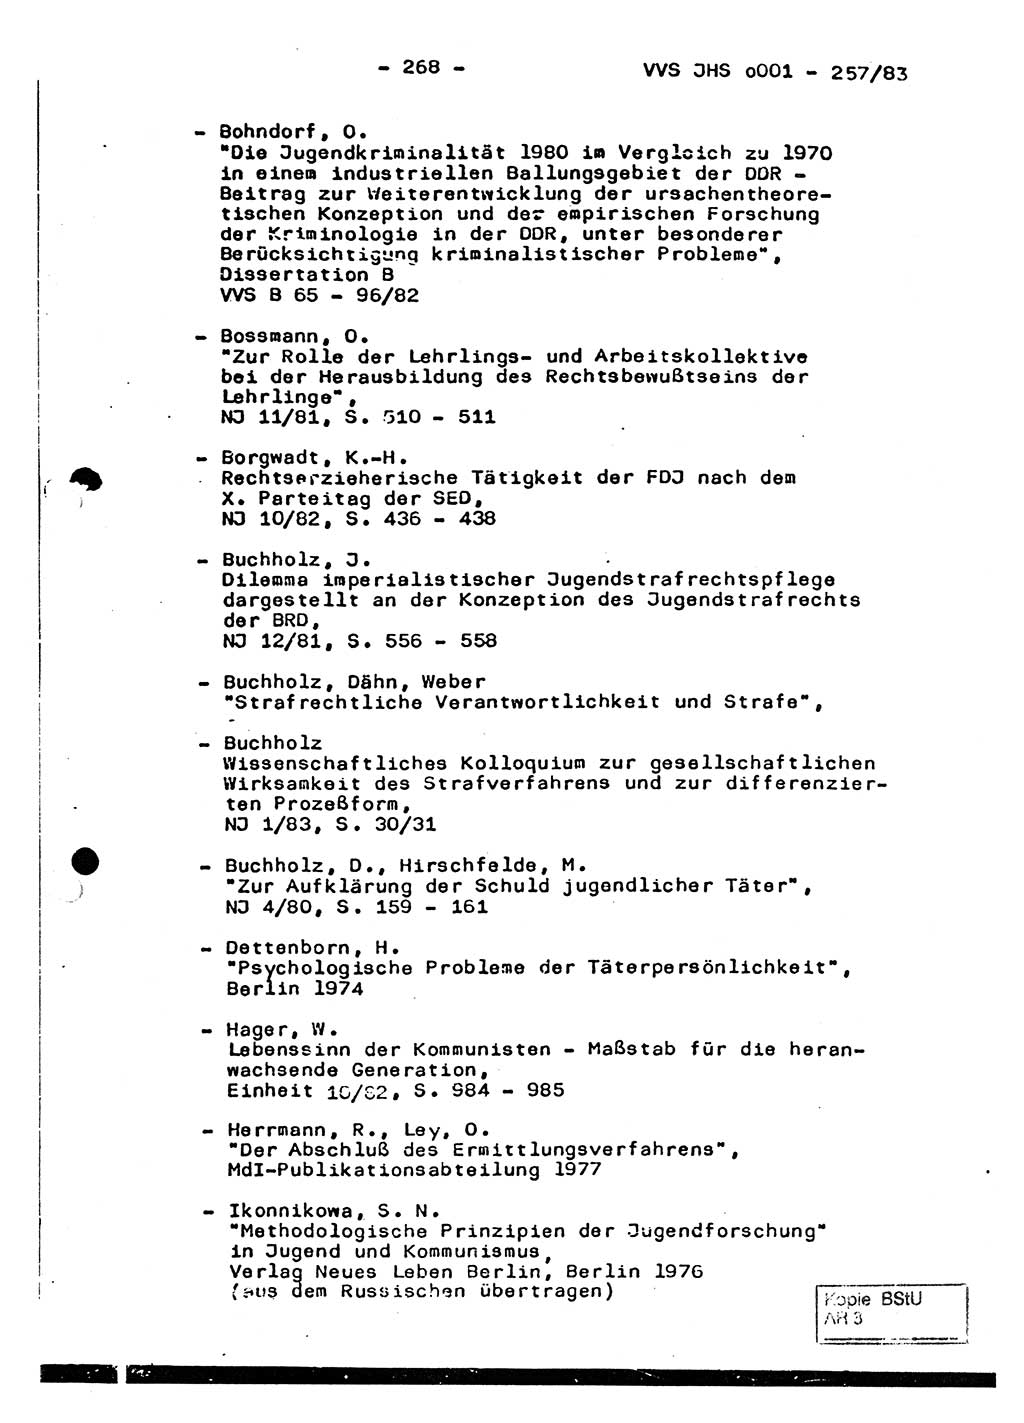 Dissertation, Oberst Helmut Lubas (BV Mdg.), Oberstleutnant Manfred Eschberger (HA IX), Oberleutnant Hans-Jürgen Ludwig (JHS), Ministerium für Staatssicherheit (MfS) [Deutsche Demokratische Republik (DDR)], Juristische Hochschule (JHS), Vertrauliche Verschlußsache (VVS) o001-257/83, Potsdam 1983, Seite 268 (Diss. MfS DDR JHS VVS o001-257/83 1983, S. 268)